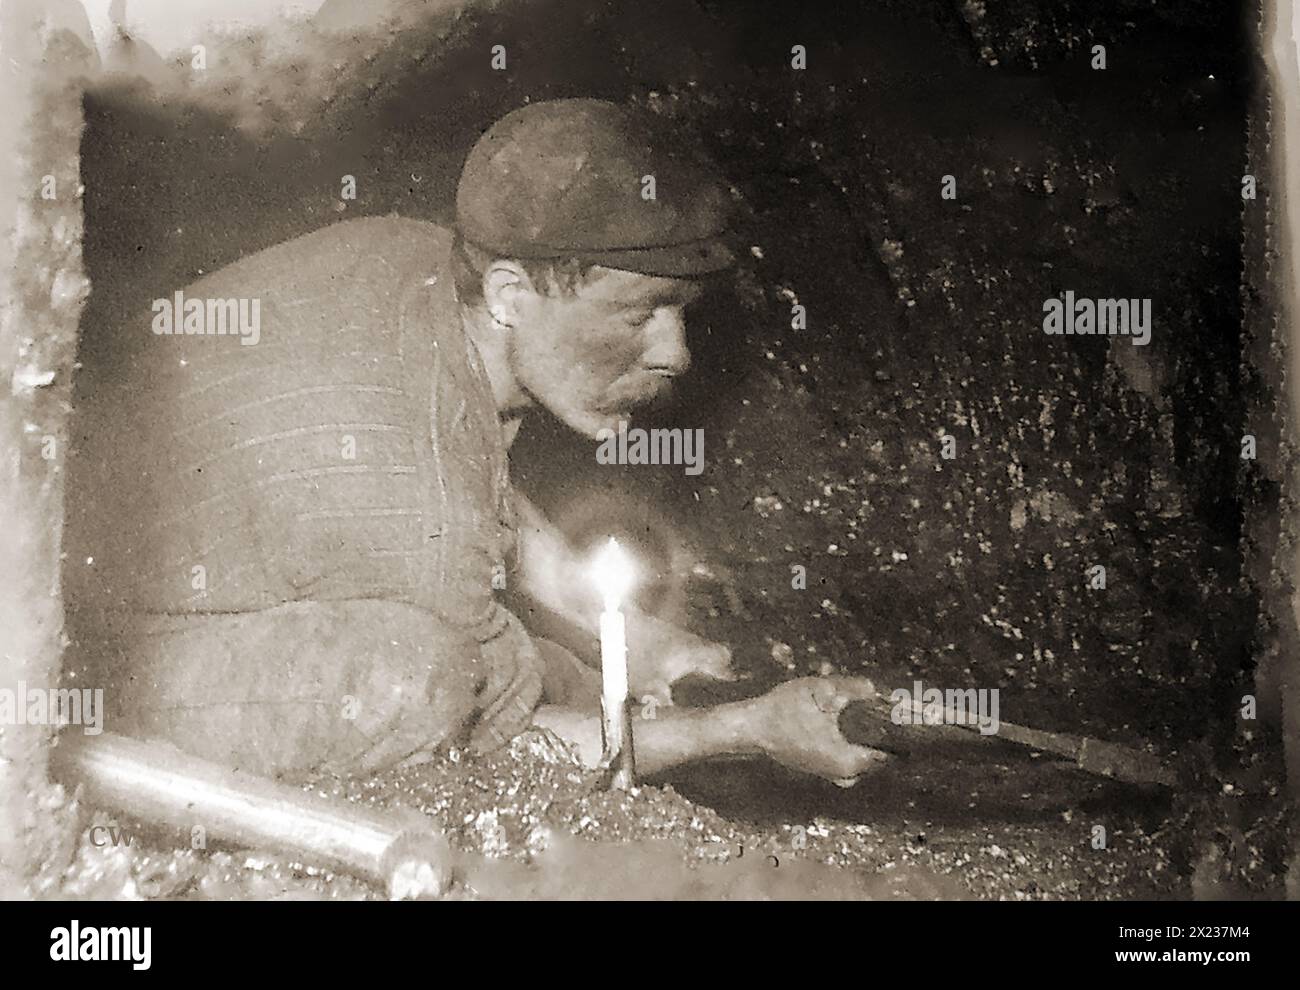 Extraction de charbon en Grande-Bretagne. Une vieille photographie montrant un mineur de charbon gallois travaillant à la lueur des chandelles sur le front de charbon. Banque D'Images